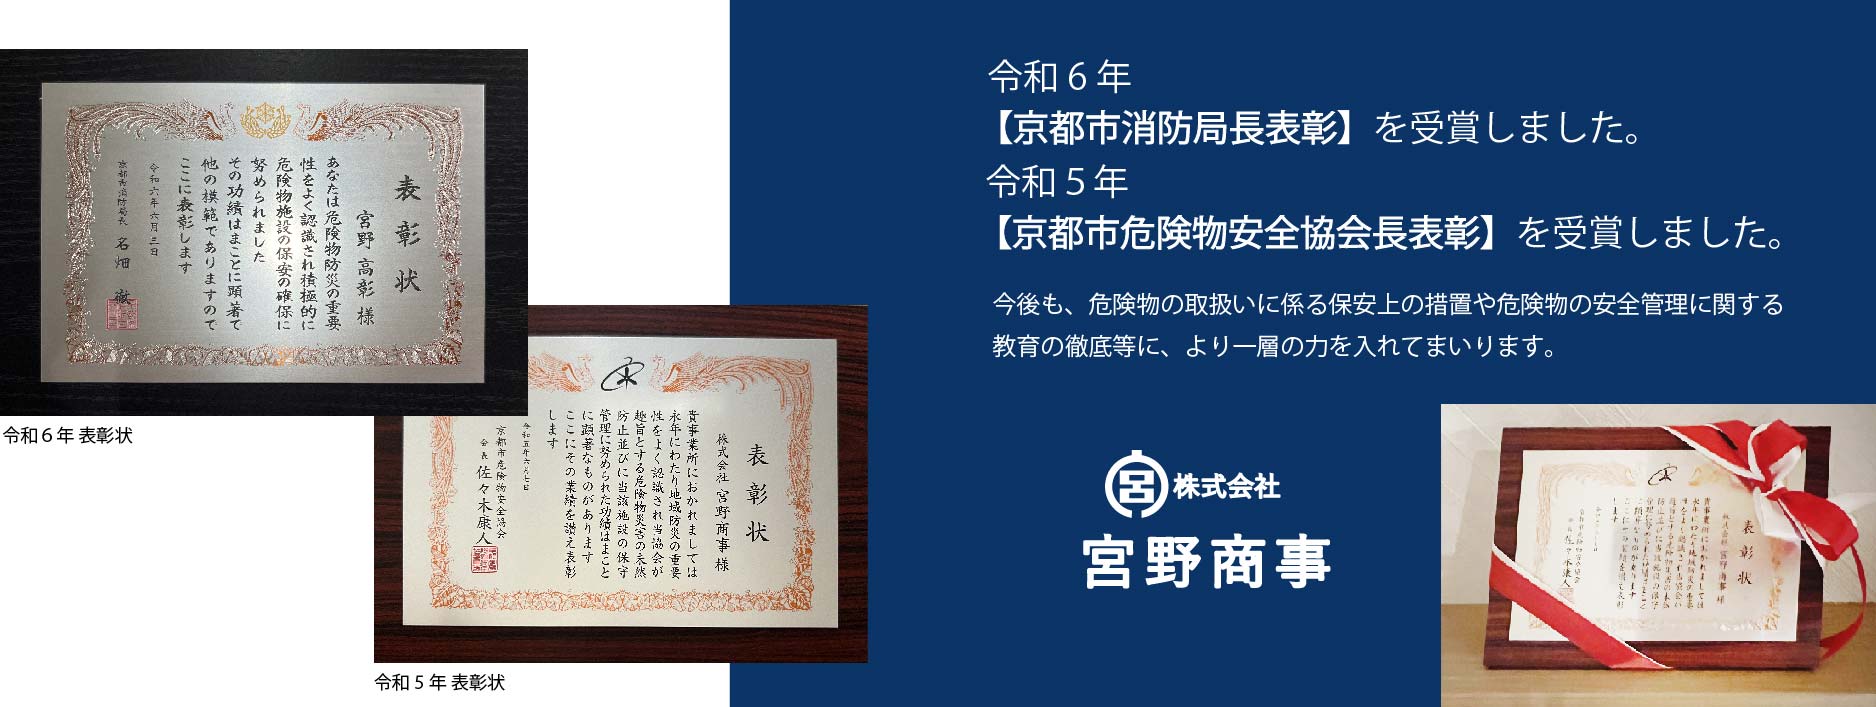 令和6年  【京都市危険物安全協会長表彰】を受賞しました。